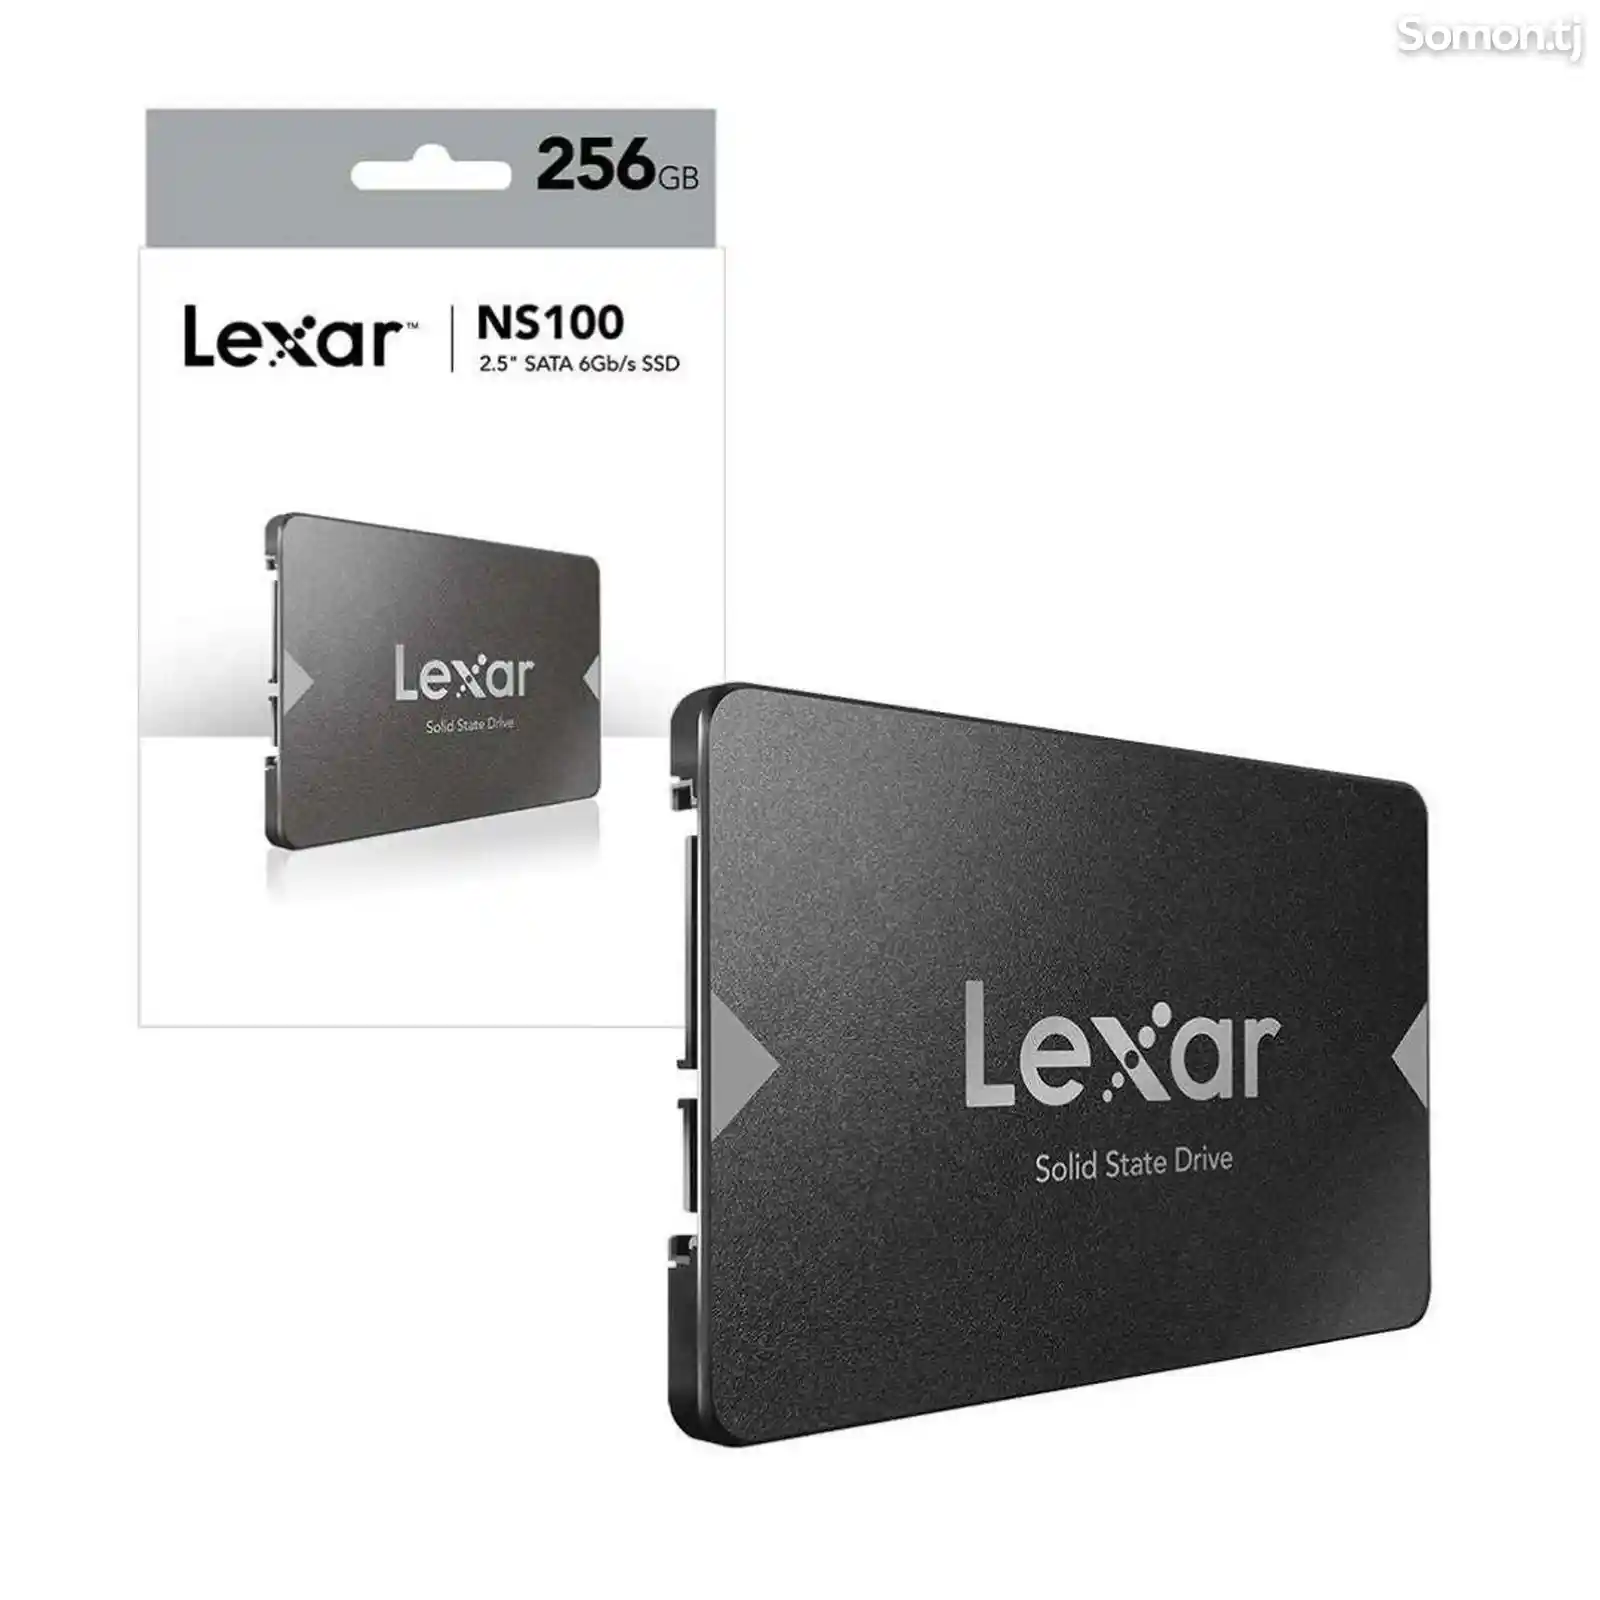 Внутренний SSD накопитель Lexar NS100, 256gb-2